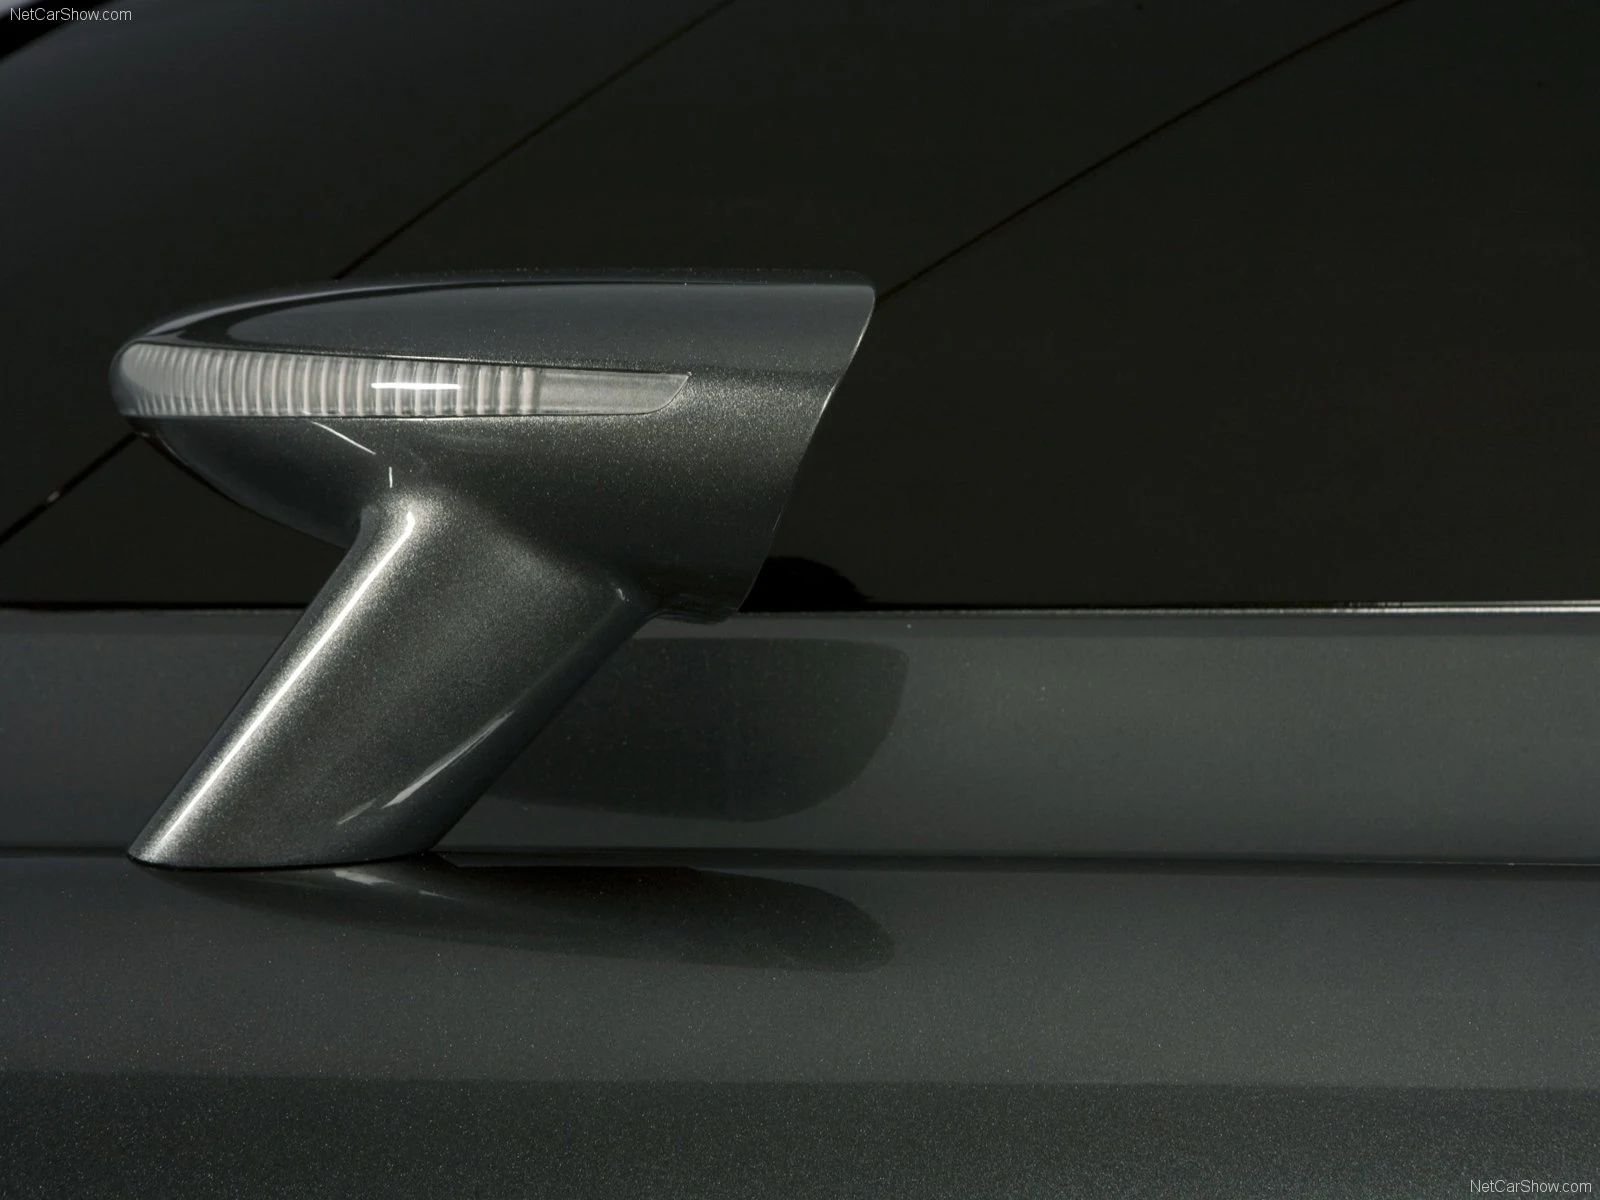 Hình ảnh siêu xe Koenigsegg Quant Concept 2009 & nội ngoại thất